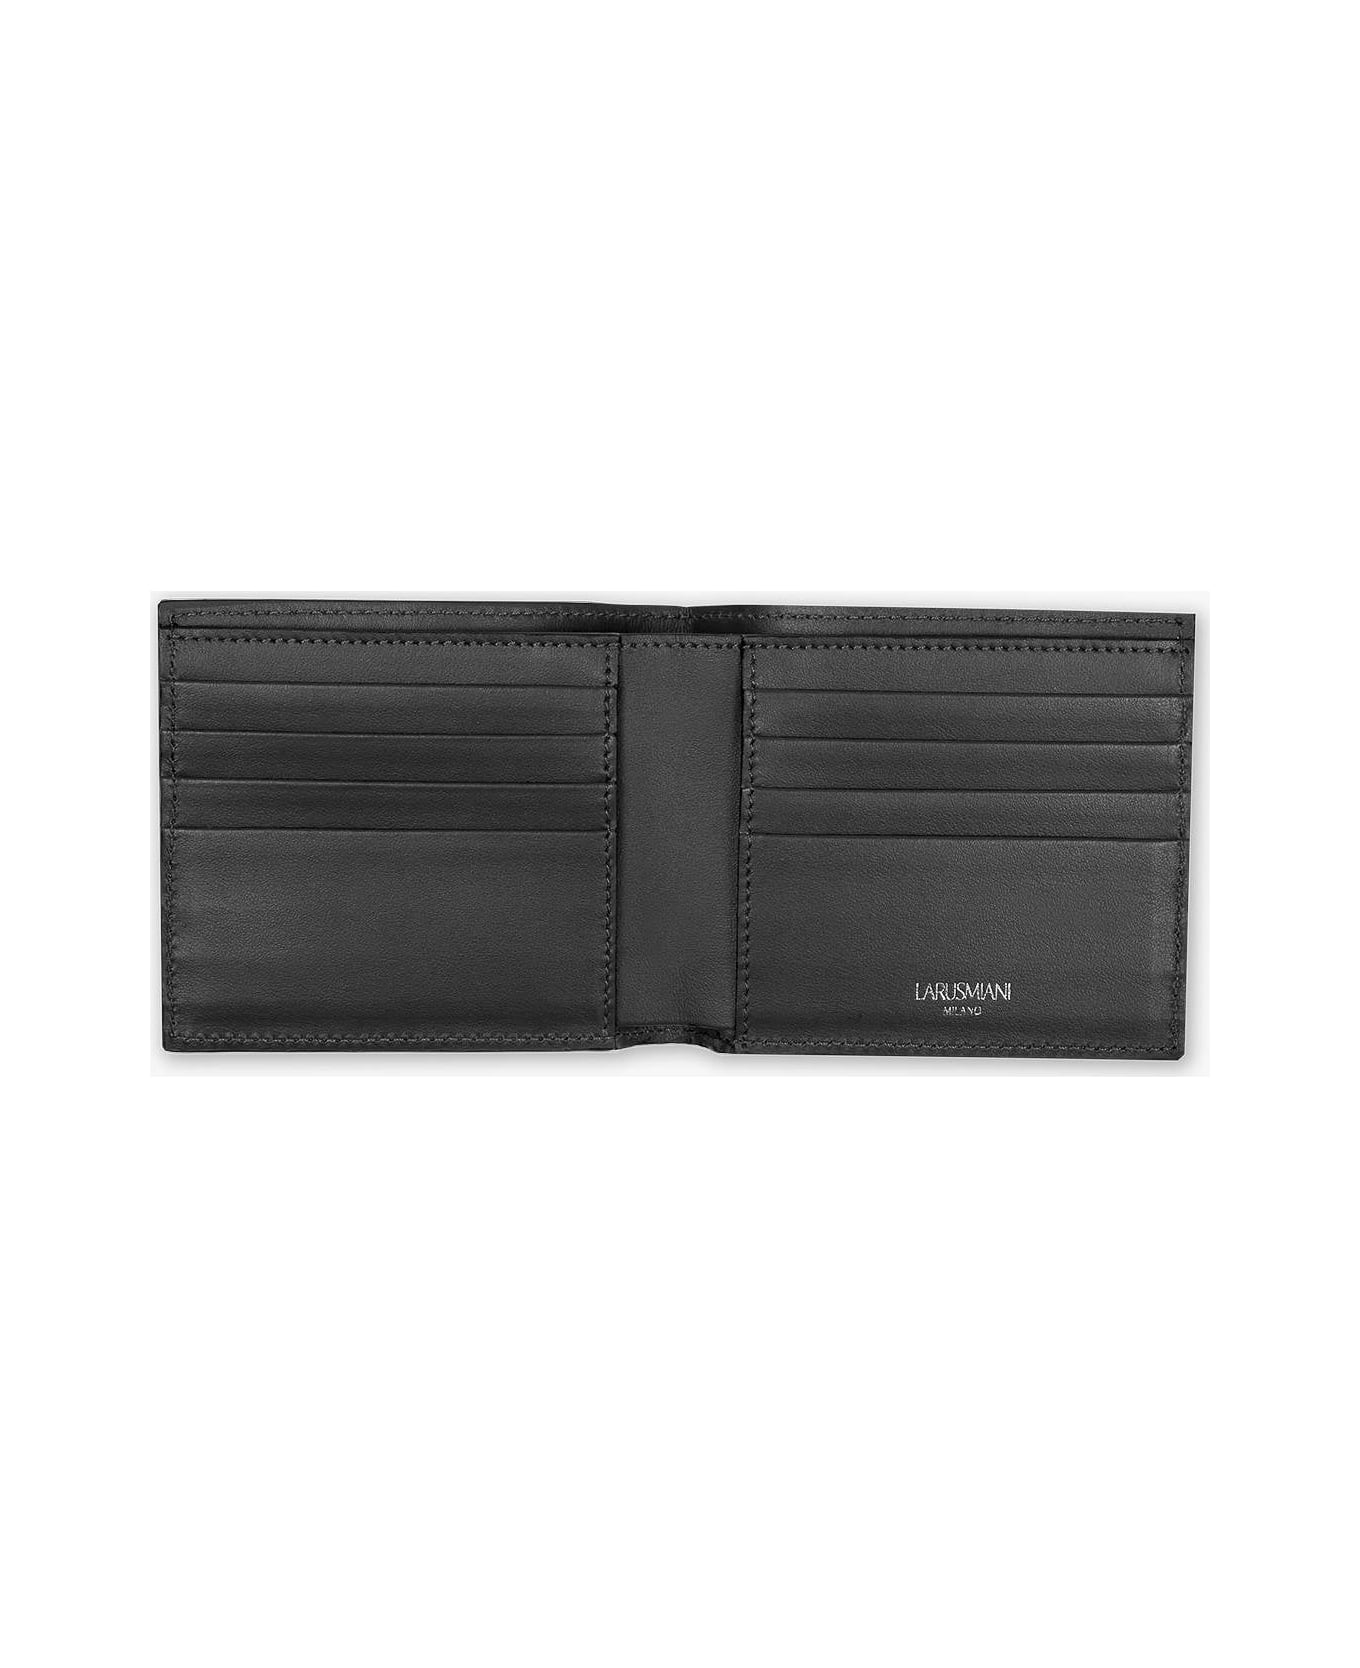 Larusmiani Wallet "euro" Wallet - Black 財布